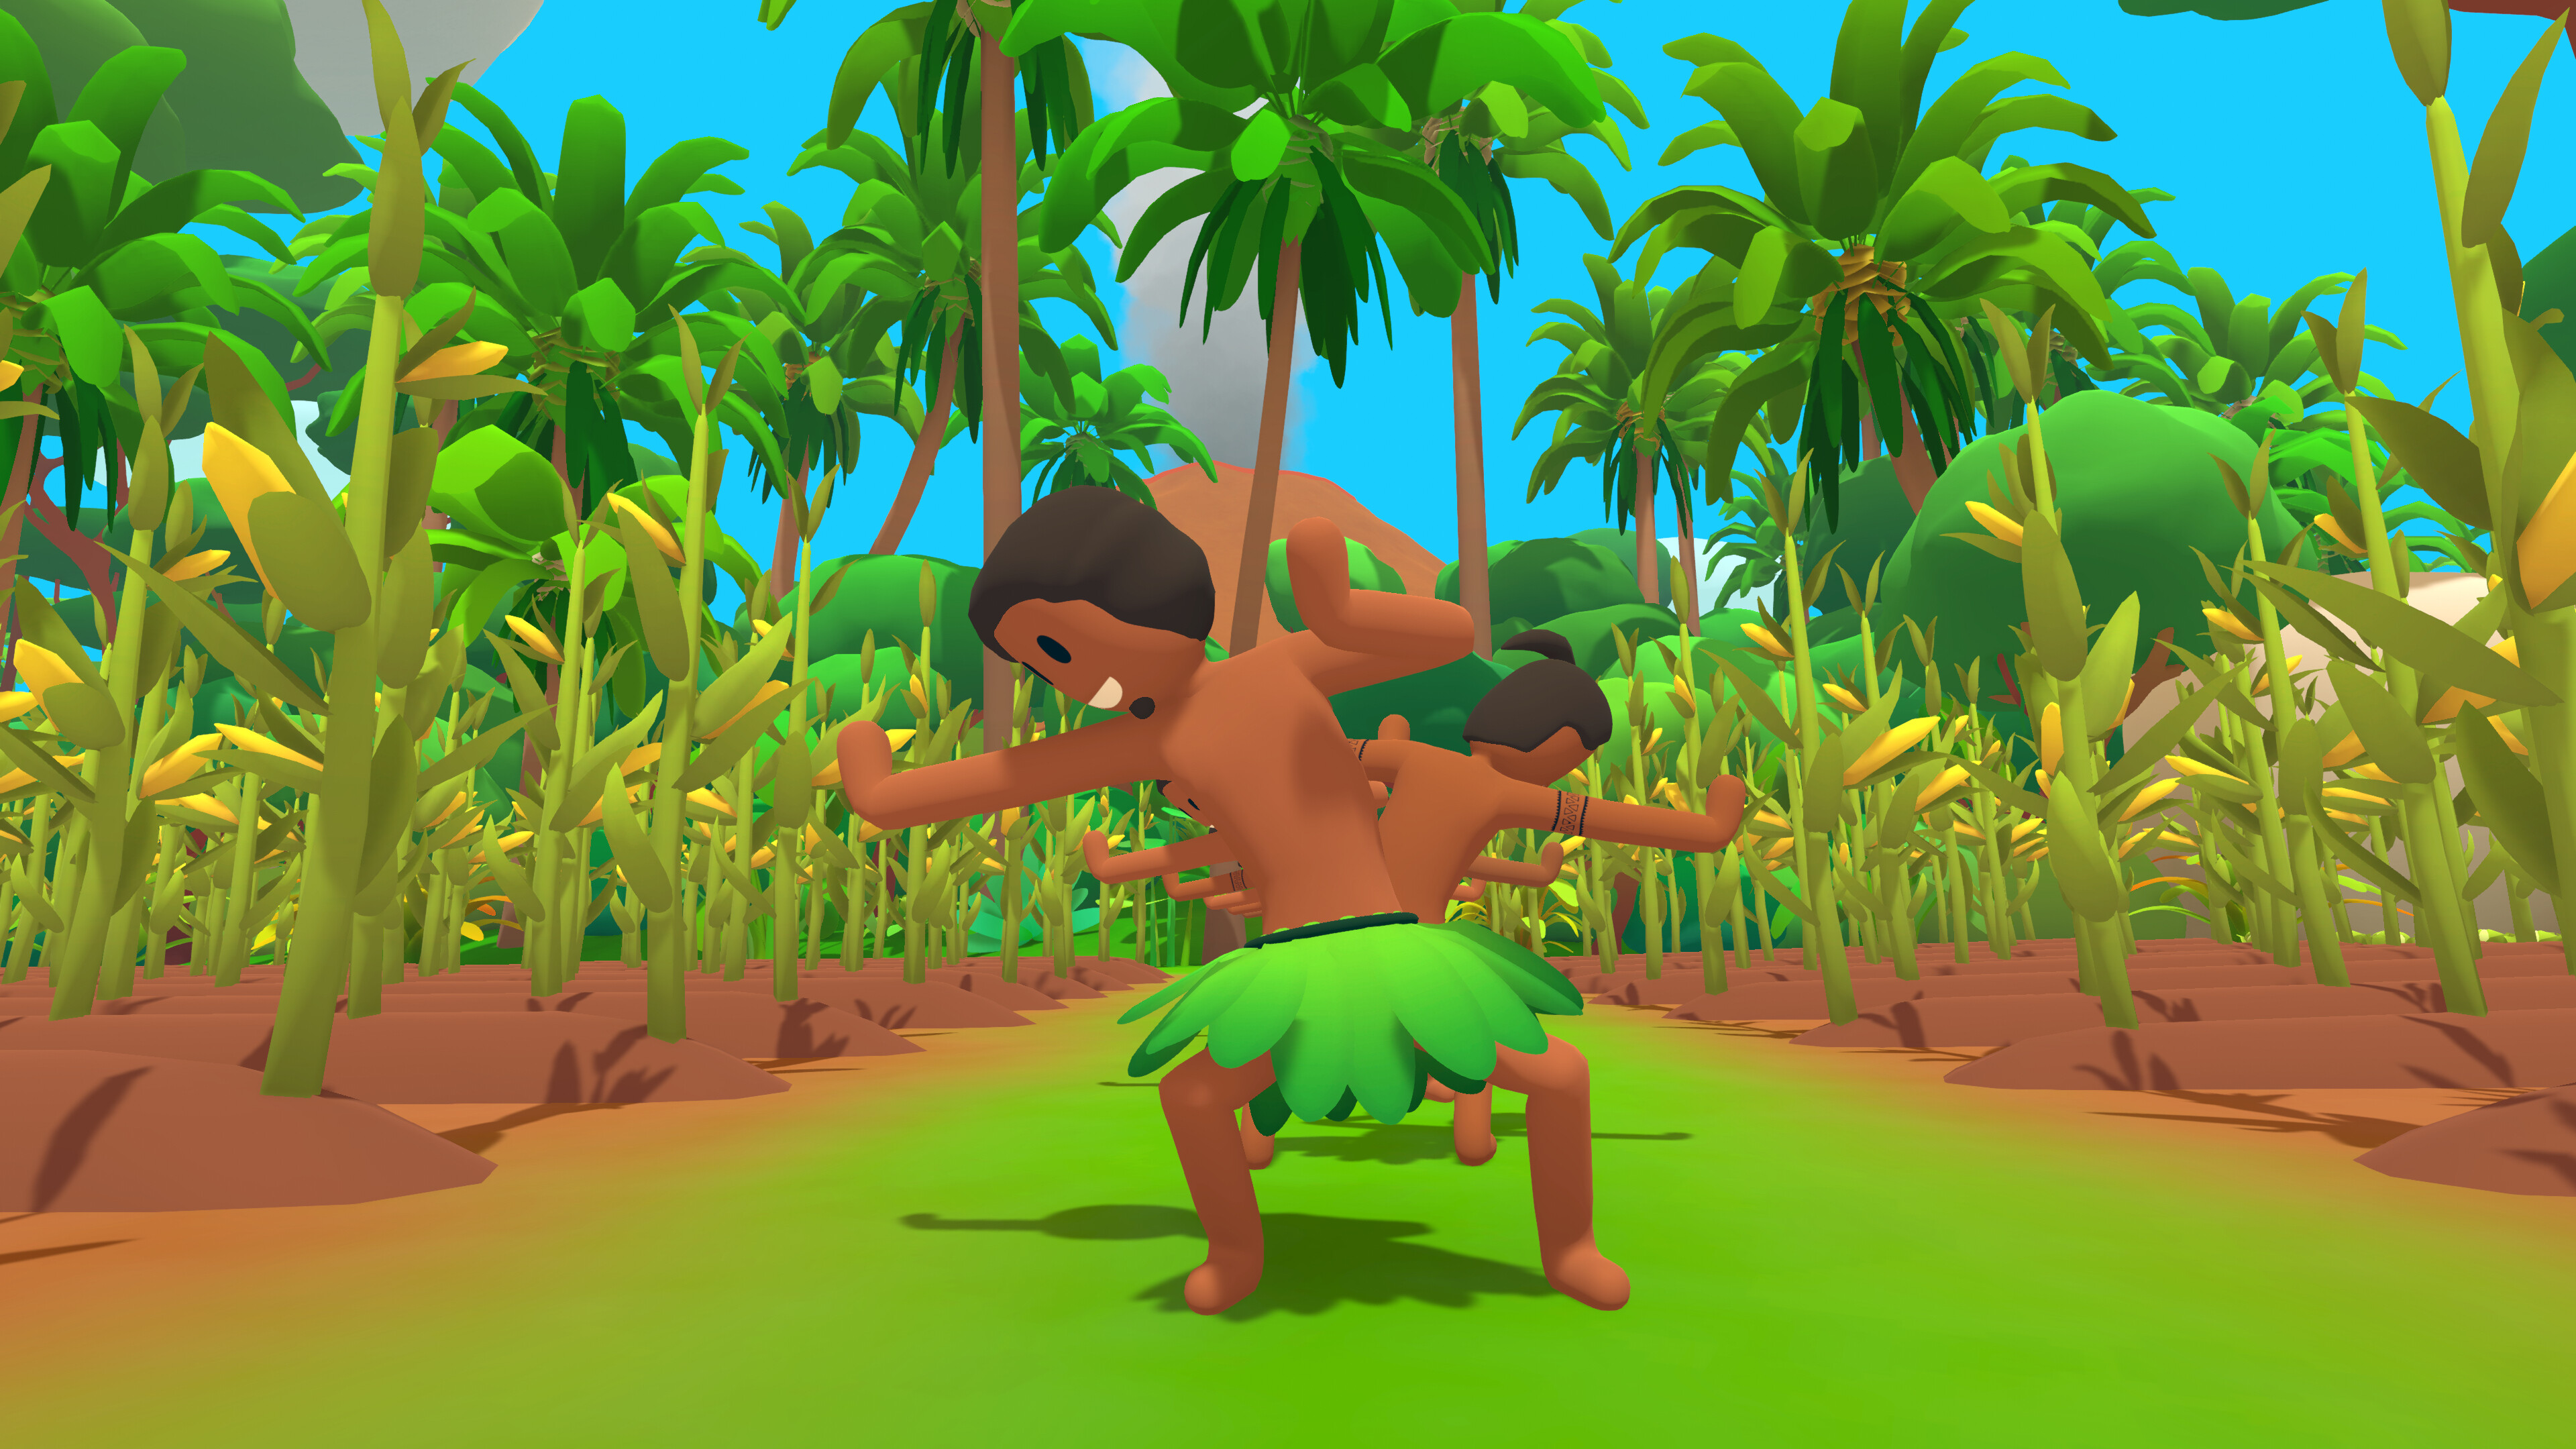 Personajes bailando en una selva